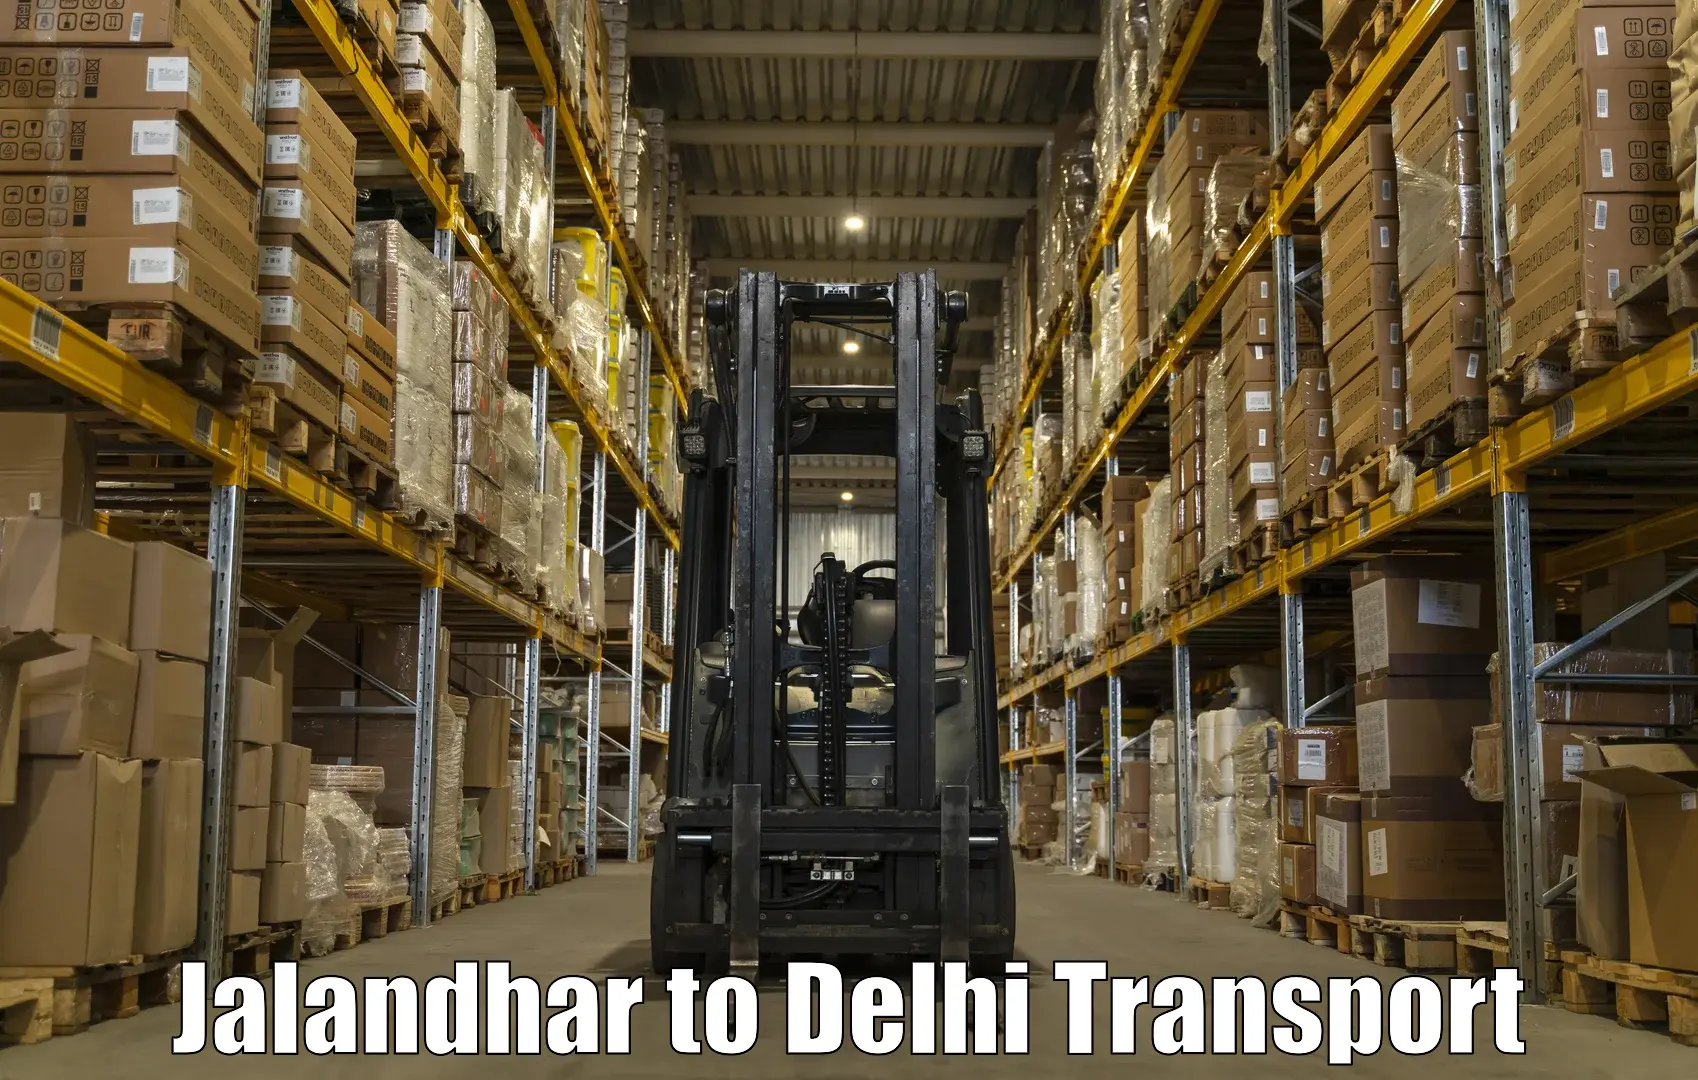 Vehicle parcel service Jalandhar to NIT Delhi